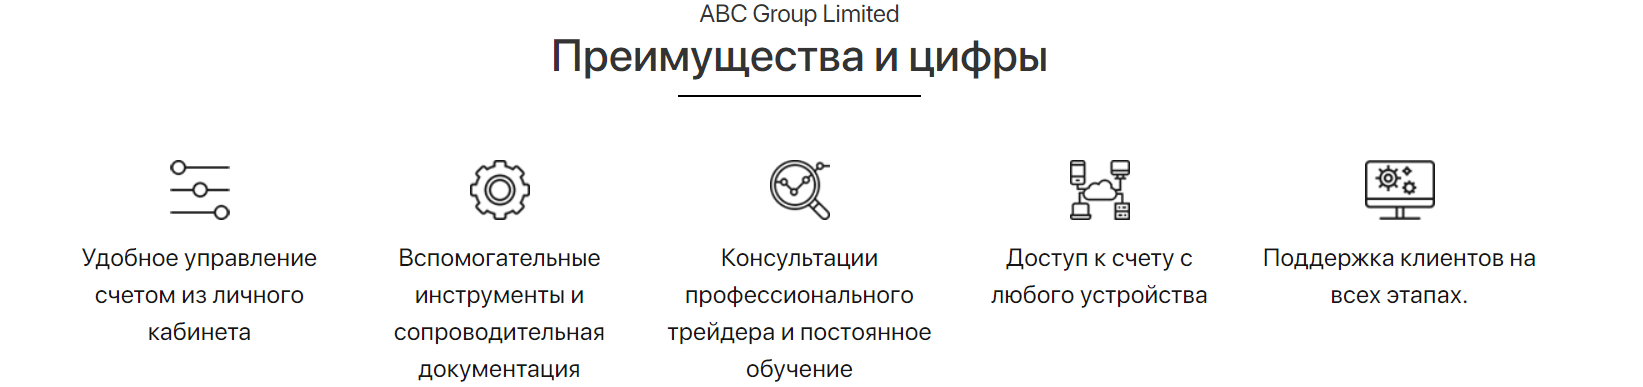 Подробности о ABC Group Limited, Фото № 3 - 1-consult.net